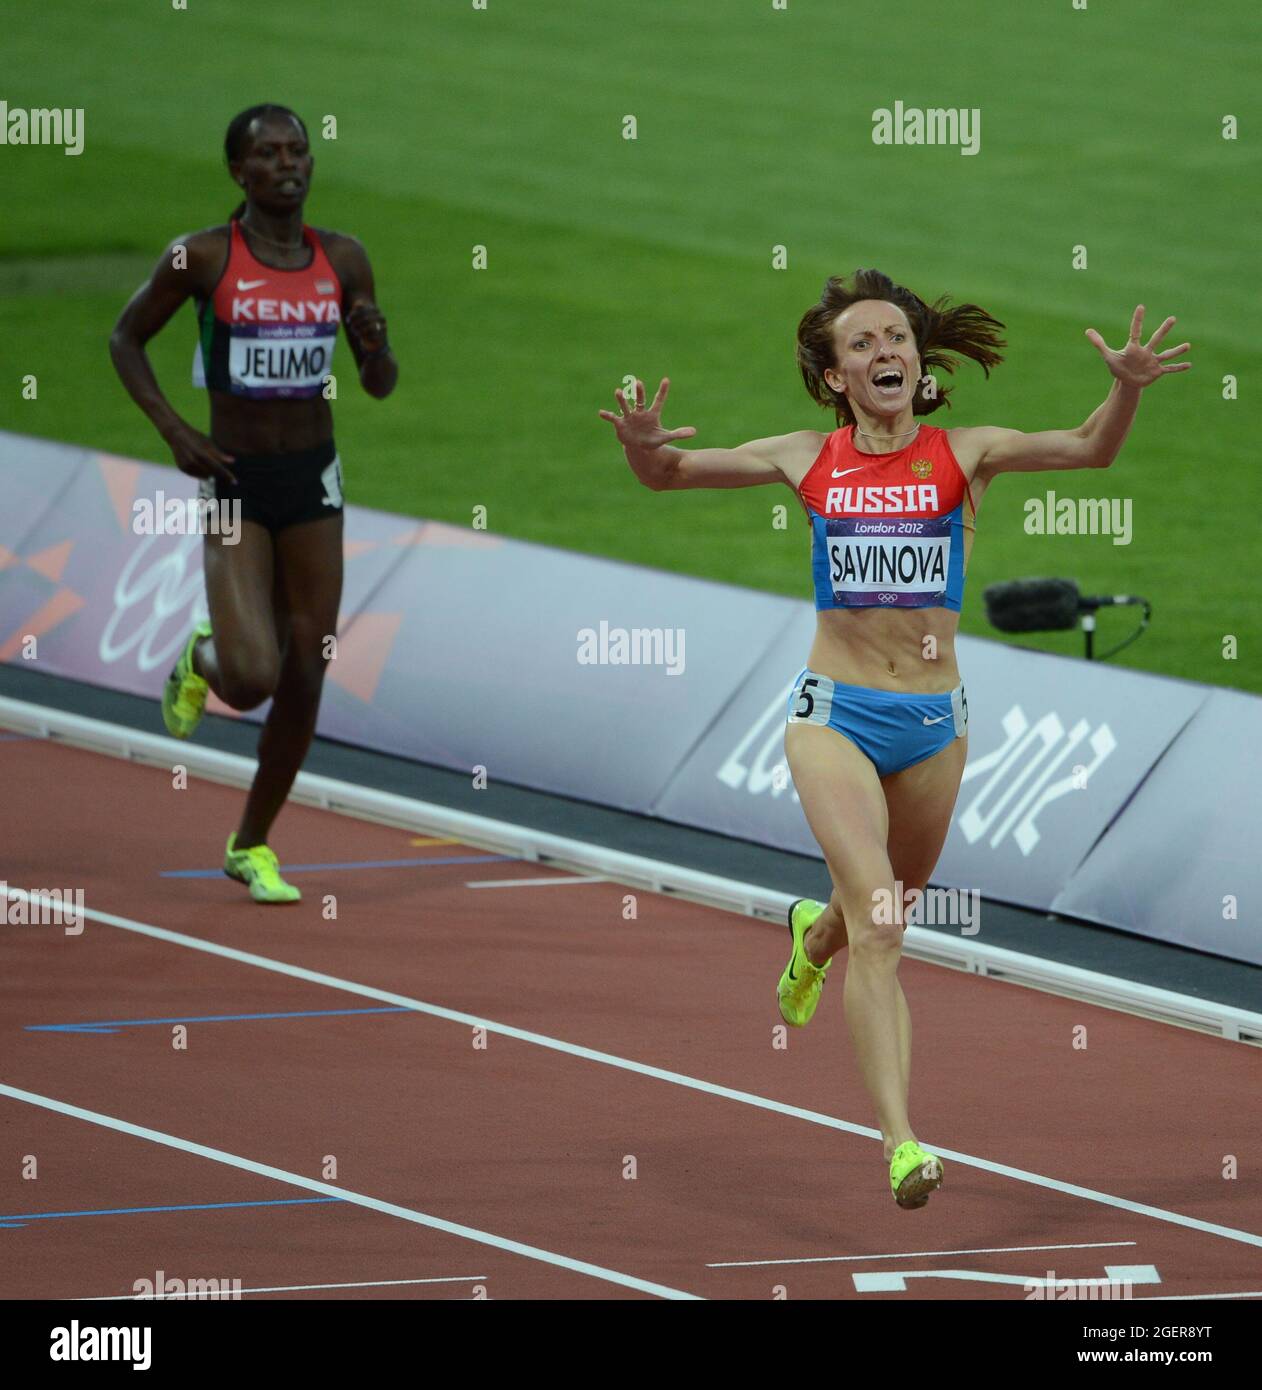 Mariya Savinova (plus tard disqualifiée) remporte le 800m féminin lors de la dernière nuit d'Athlétisme au stade olympique, 11 août 2012 Banque D'Images